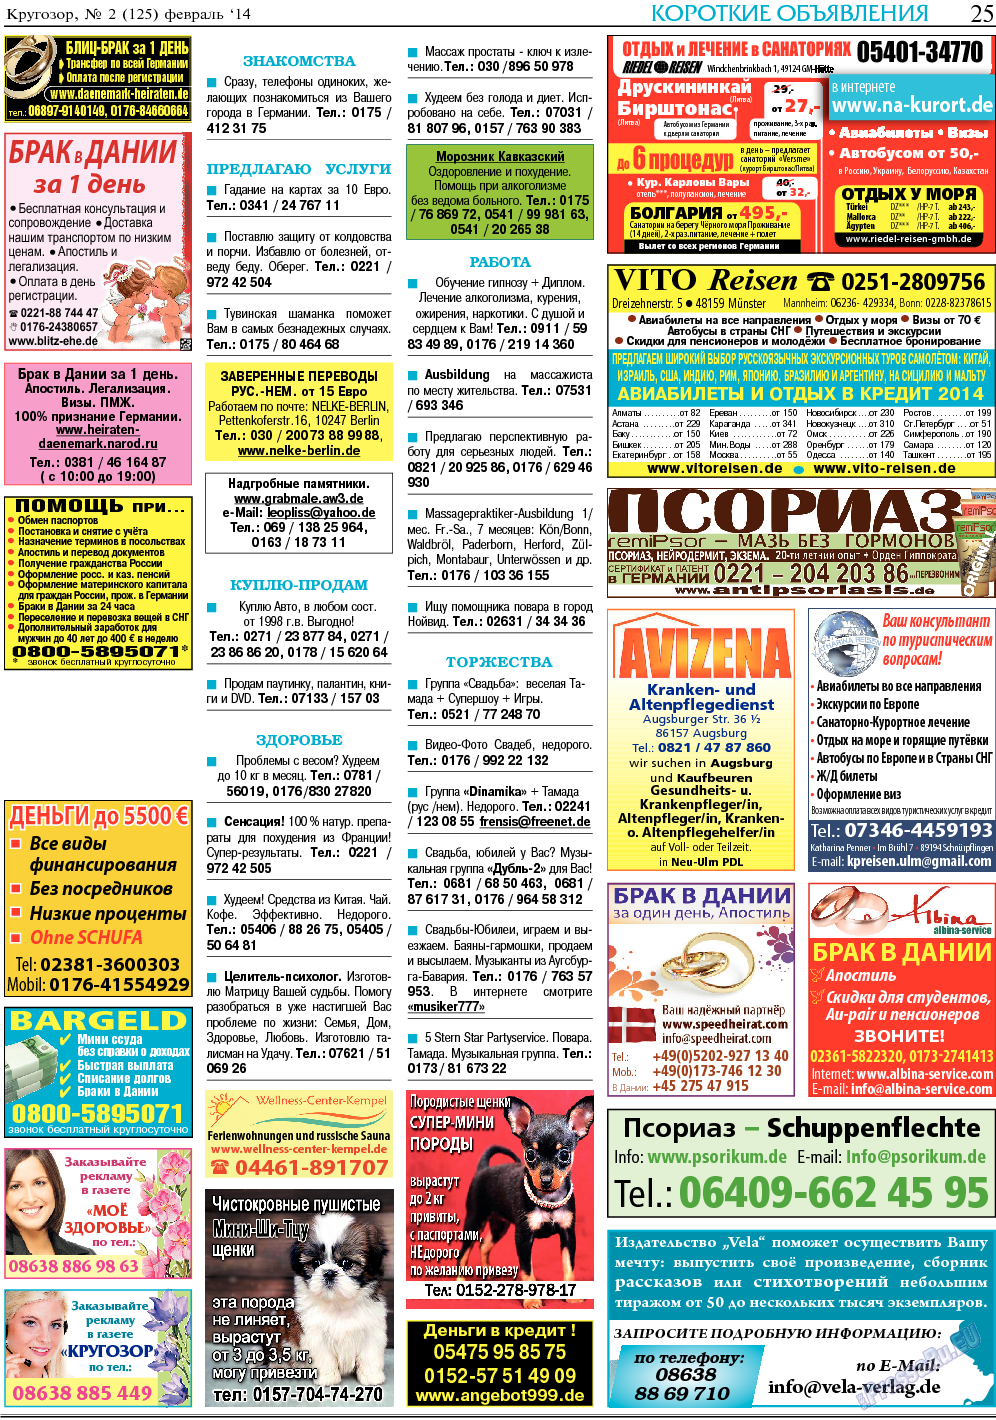 Кругозор, газета. 2014 №2 стр.25